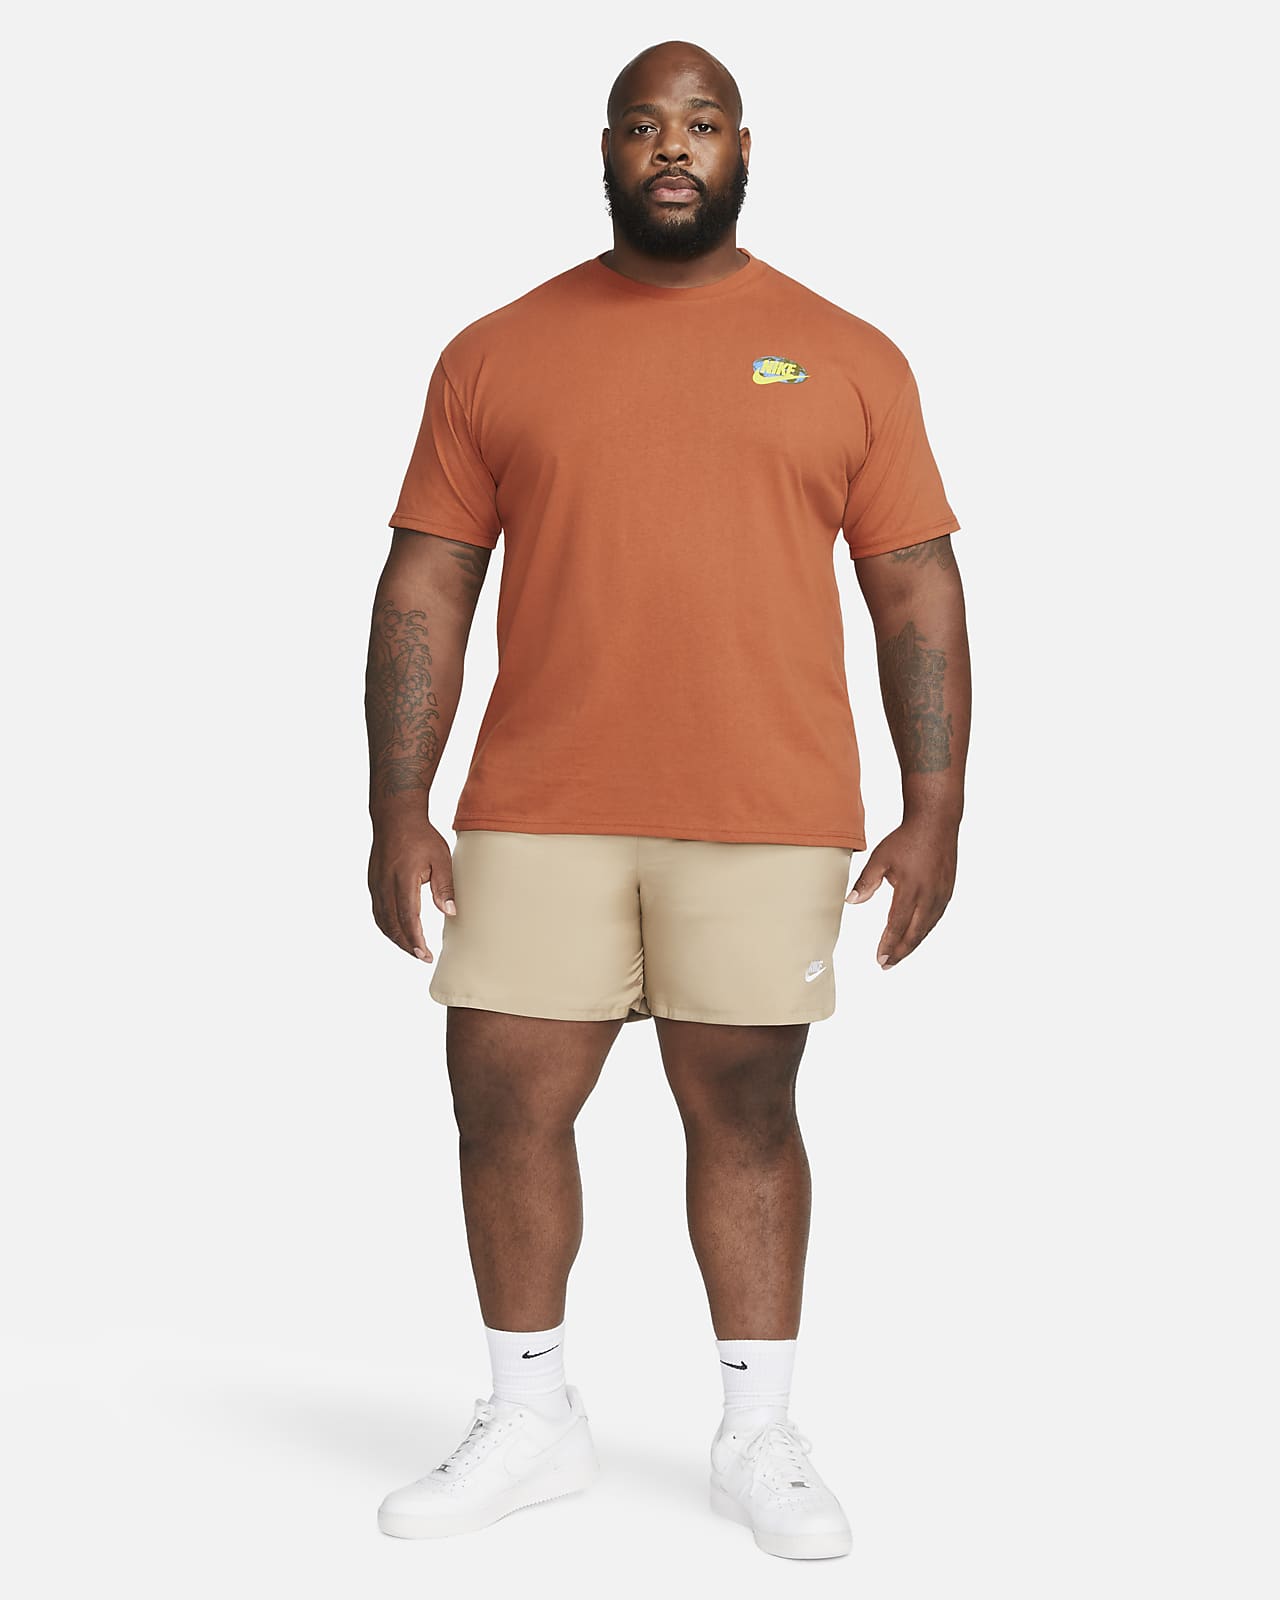 vedvarende ressource forskellige vedtage Nike Sportswear Men's T-Shirt. Nike.com